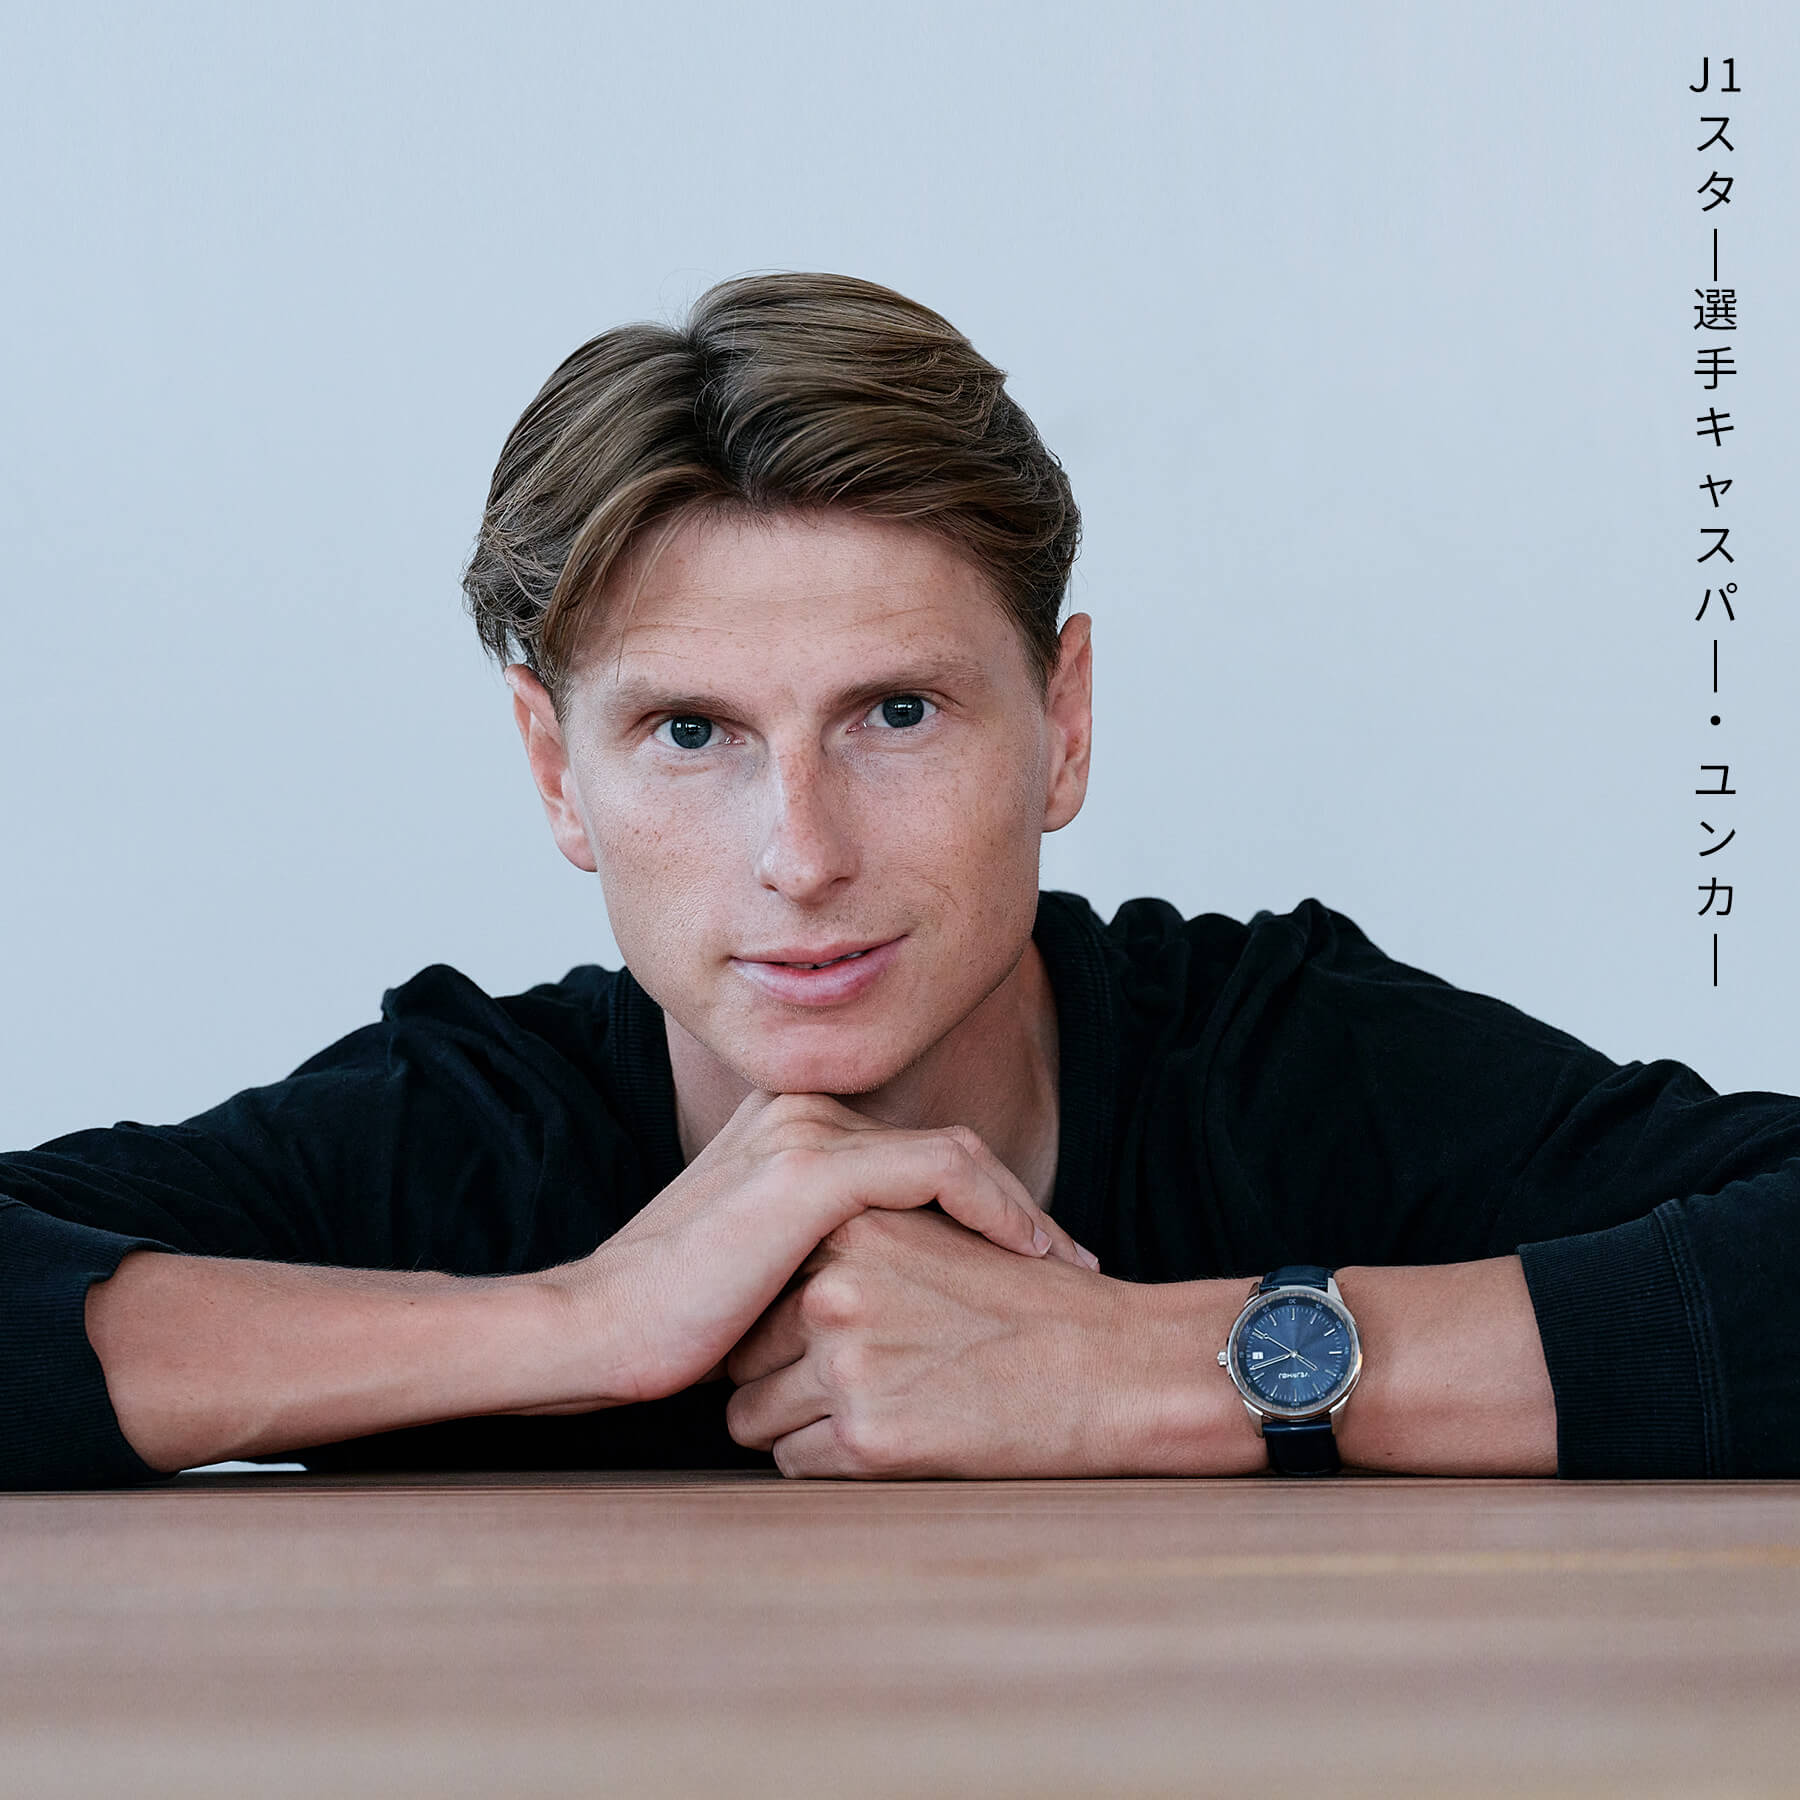 名古屋グランパスのキャスパーユンカーが青い自動巻式腕時計をつけてる